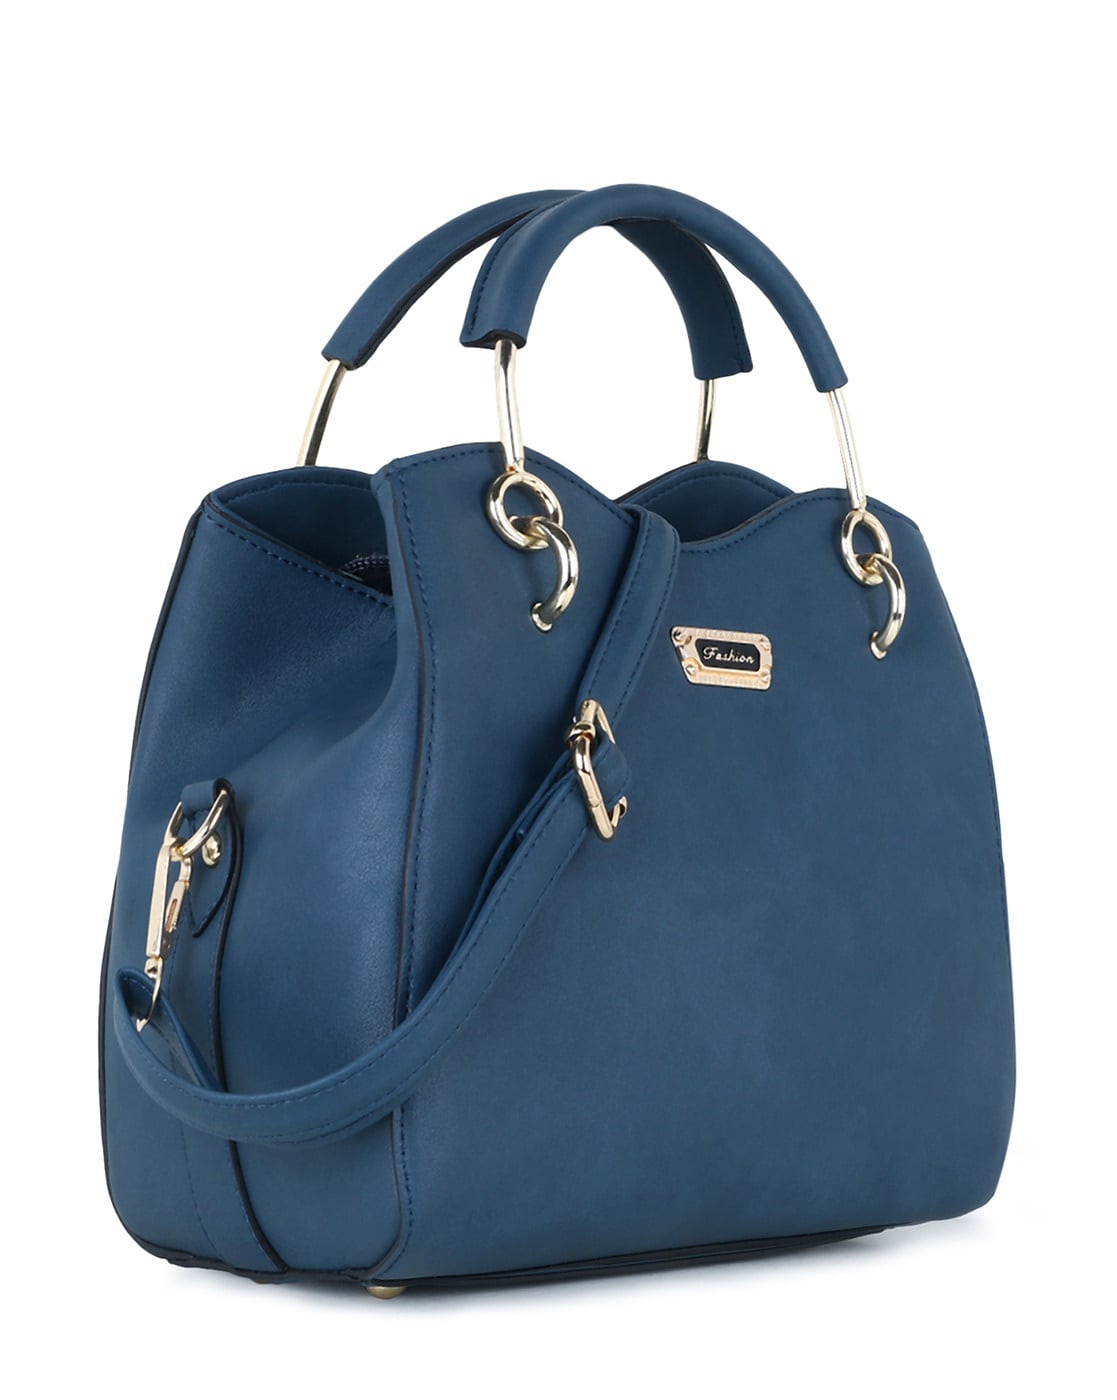 Buy LaFille Beige Womens Handbag - Shoulder Bag - Combo Set of 5 online